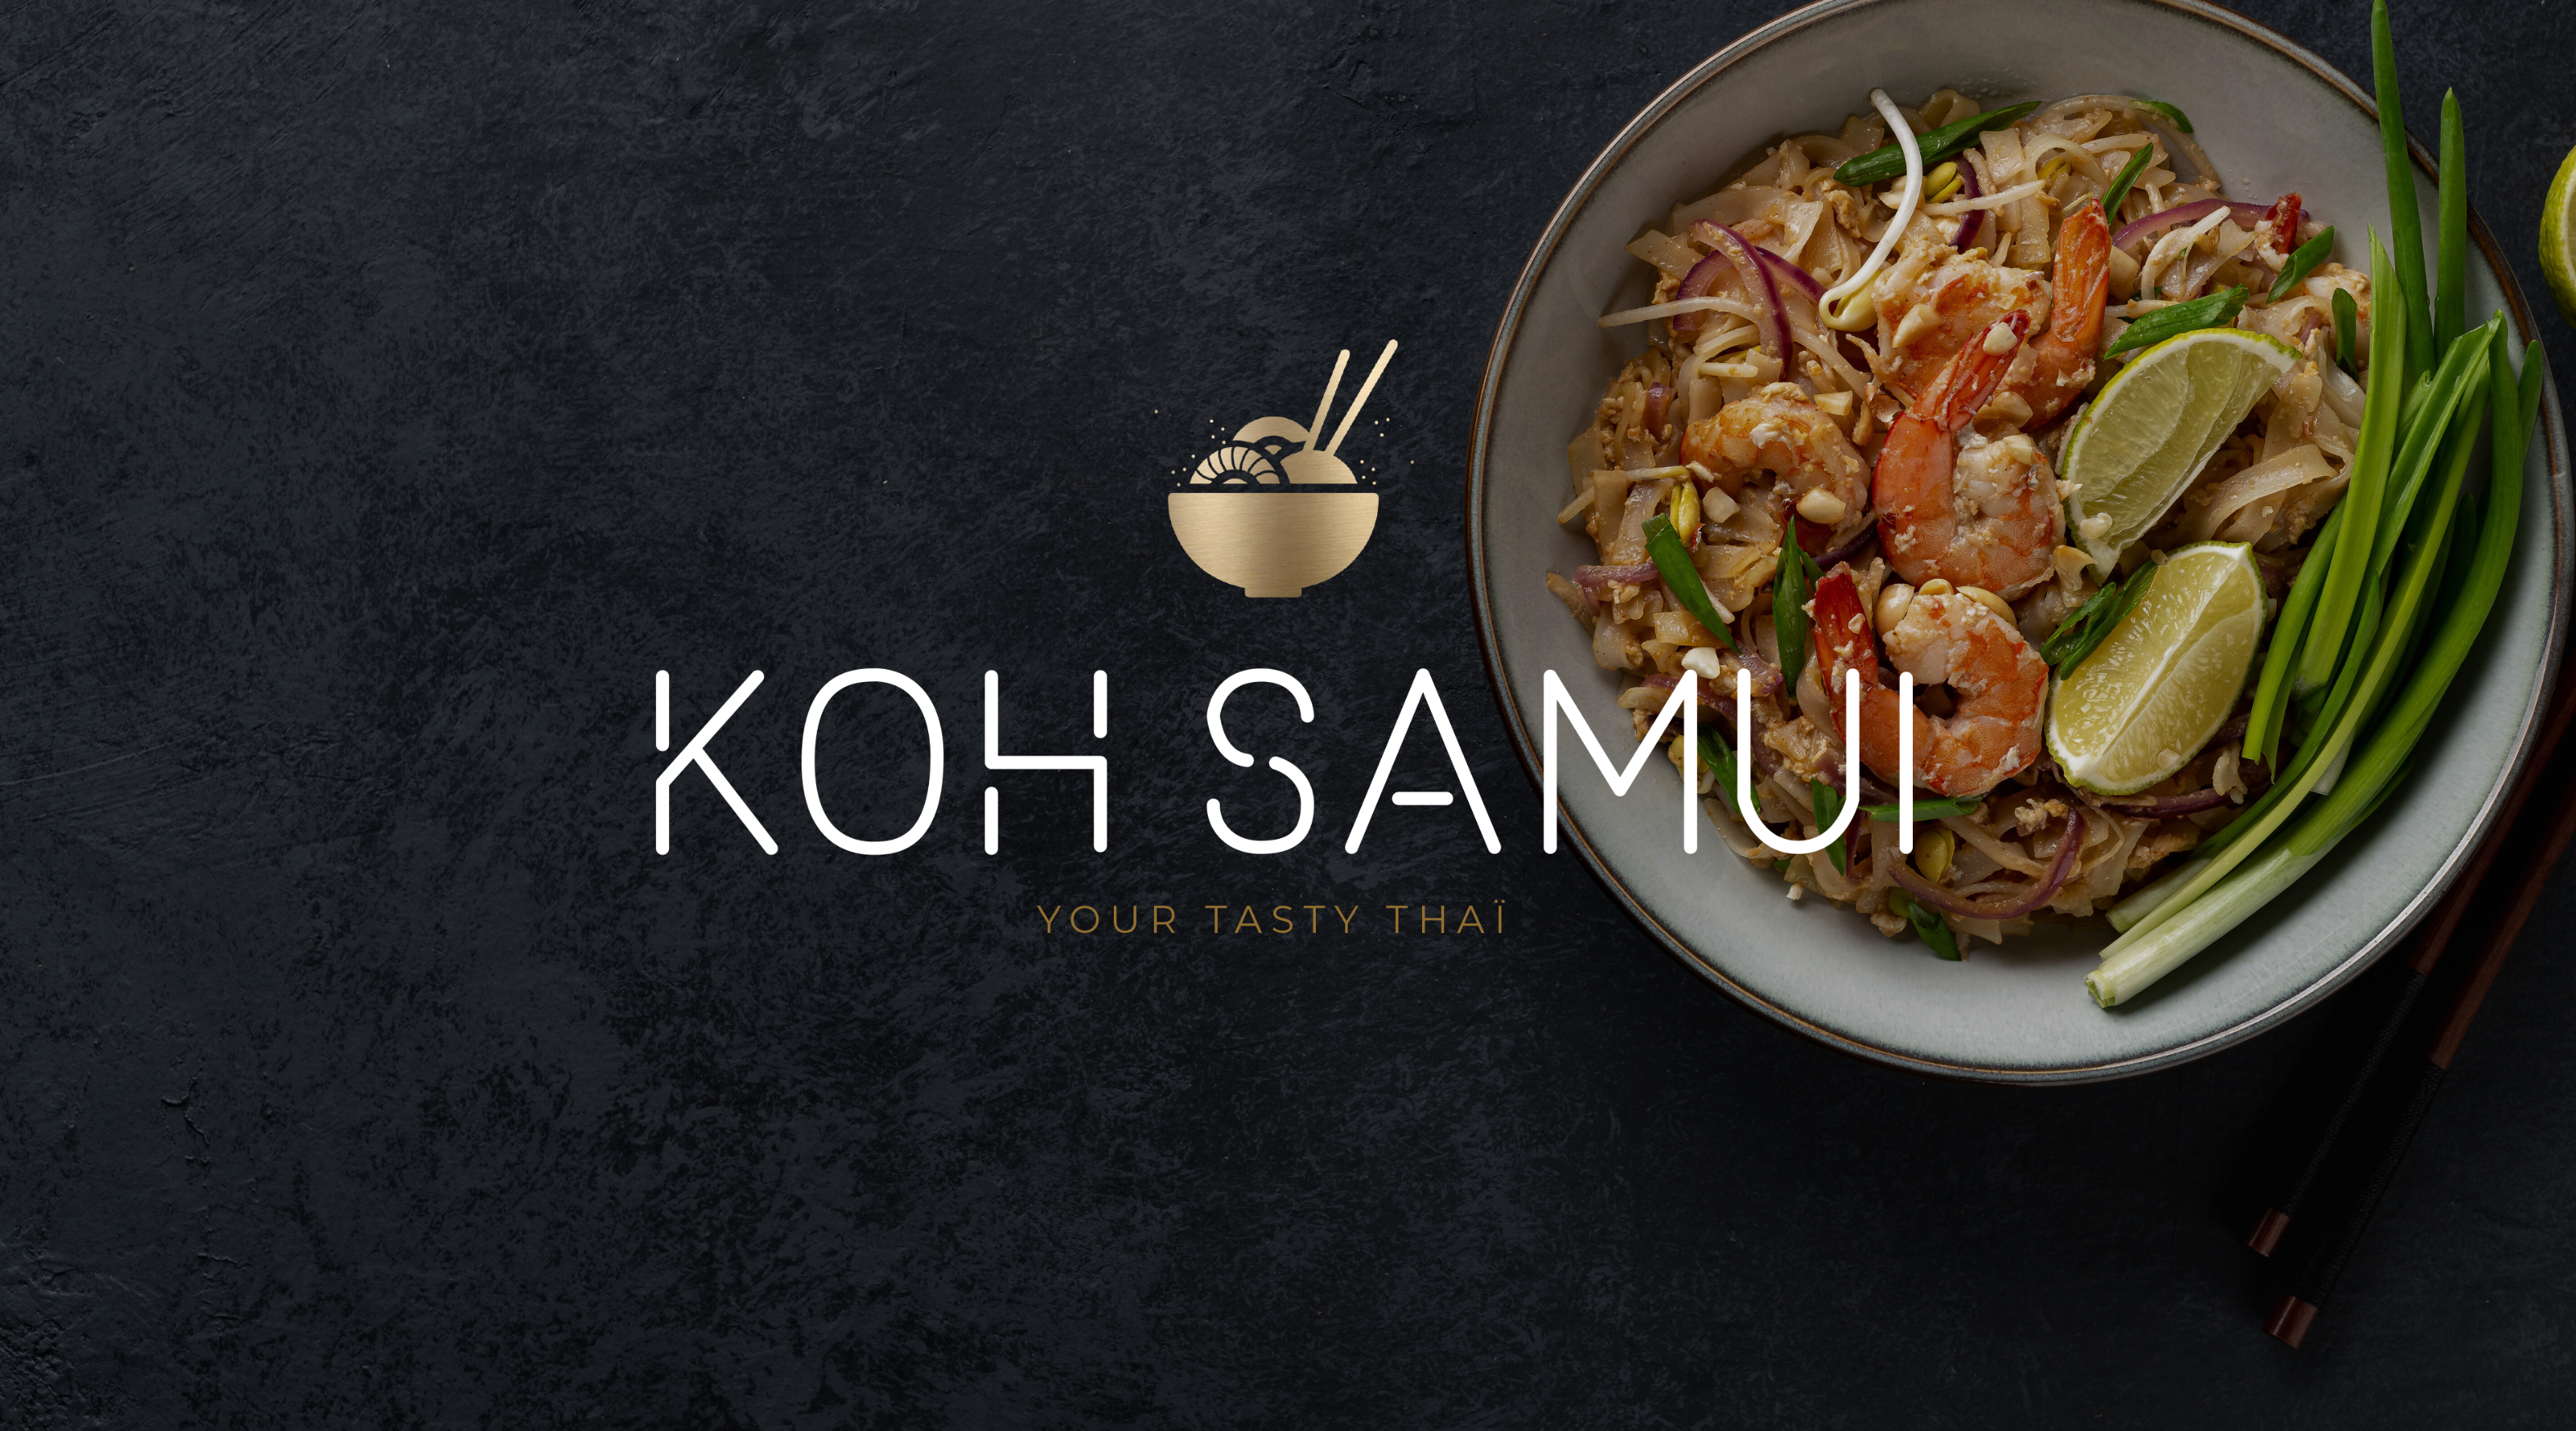 fond d'écran d'un plat thailandais avec le logo du koh samui tarbes